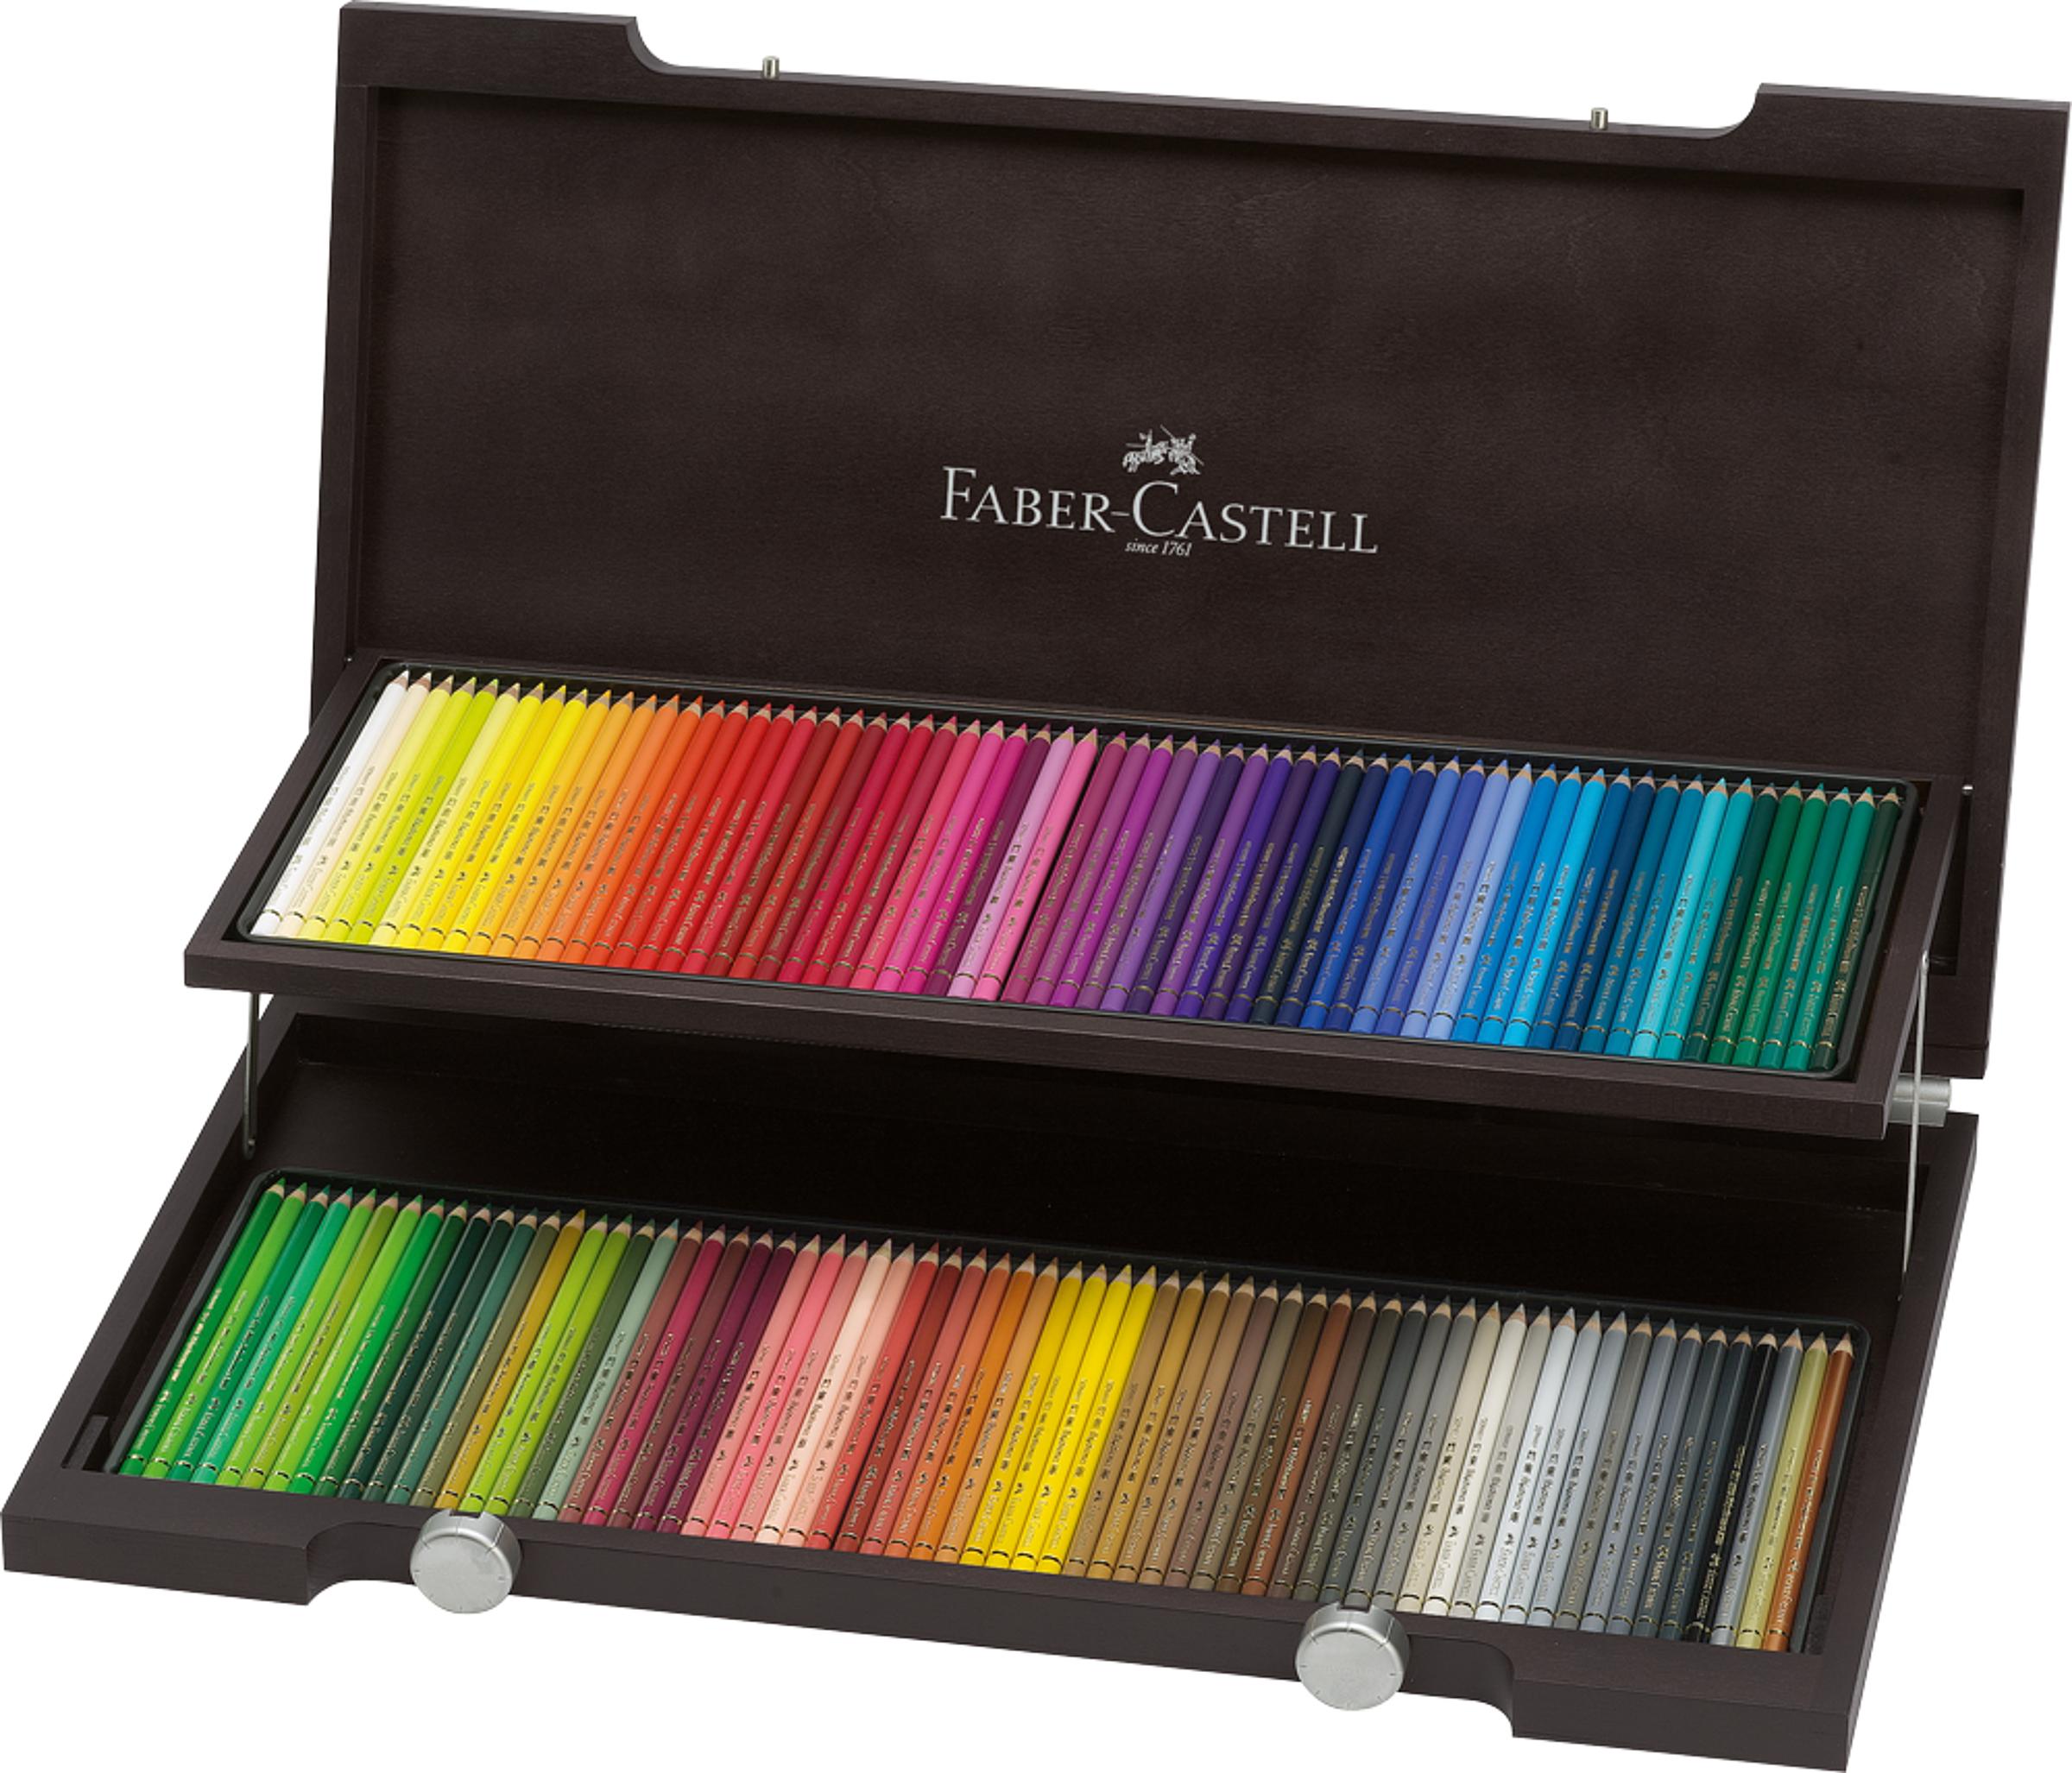 Faber-Castell 125012 Illustrieren Aquarellfarbkasten mit 12 Farben Kolorieren und Zeichnen zum Malen 1 Stück inklusive Pinsel 